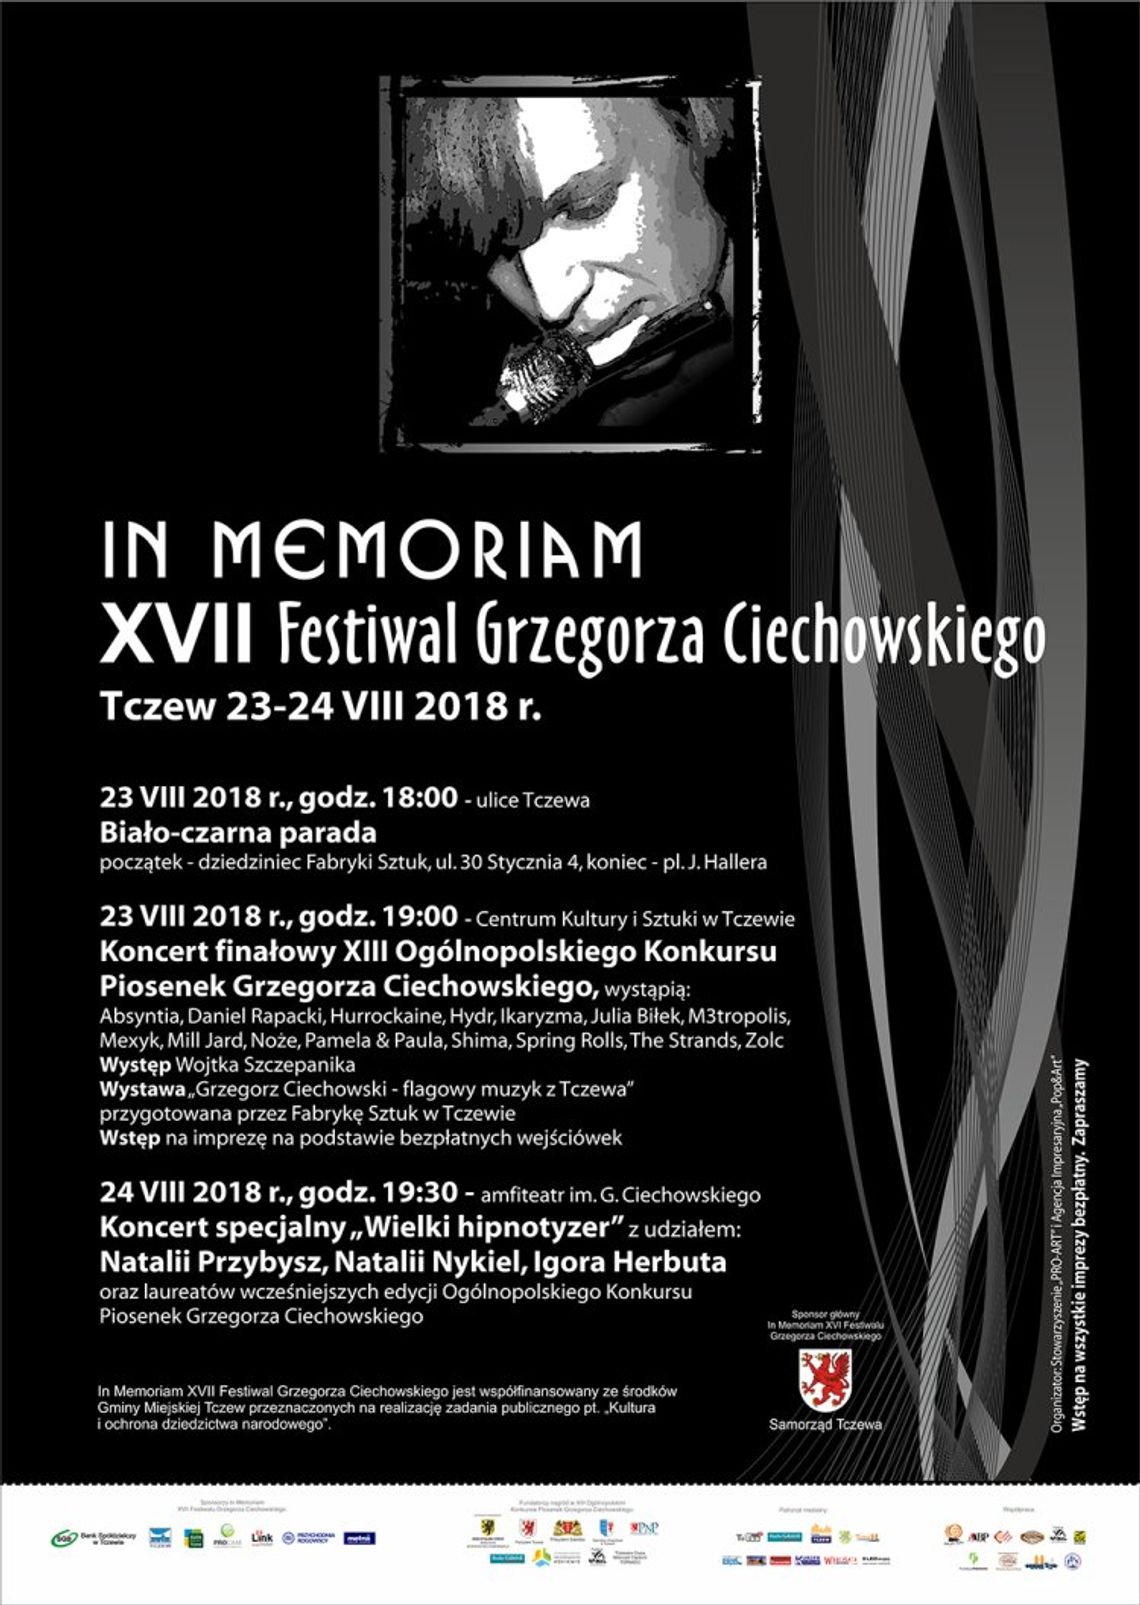 In Memoriam XVII Festiwal Grzegorza Ciechowskiego